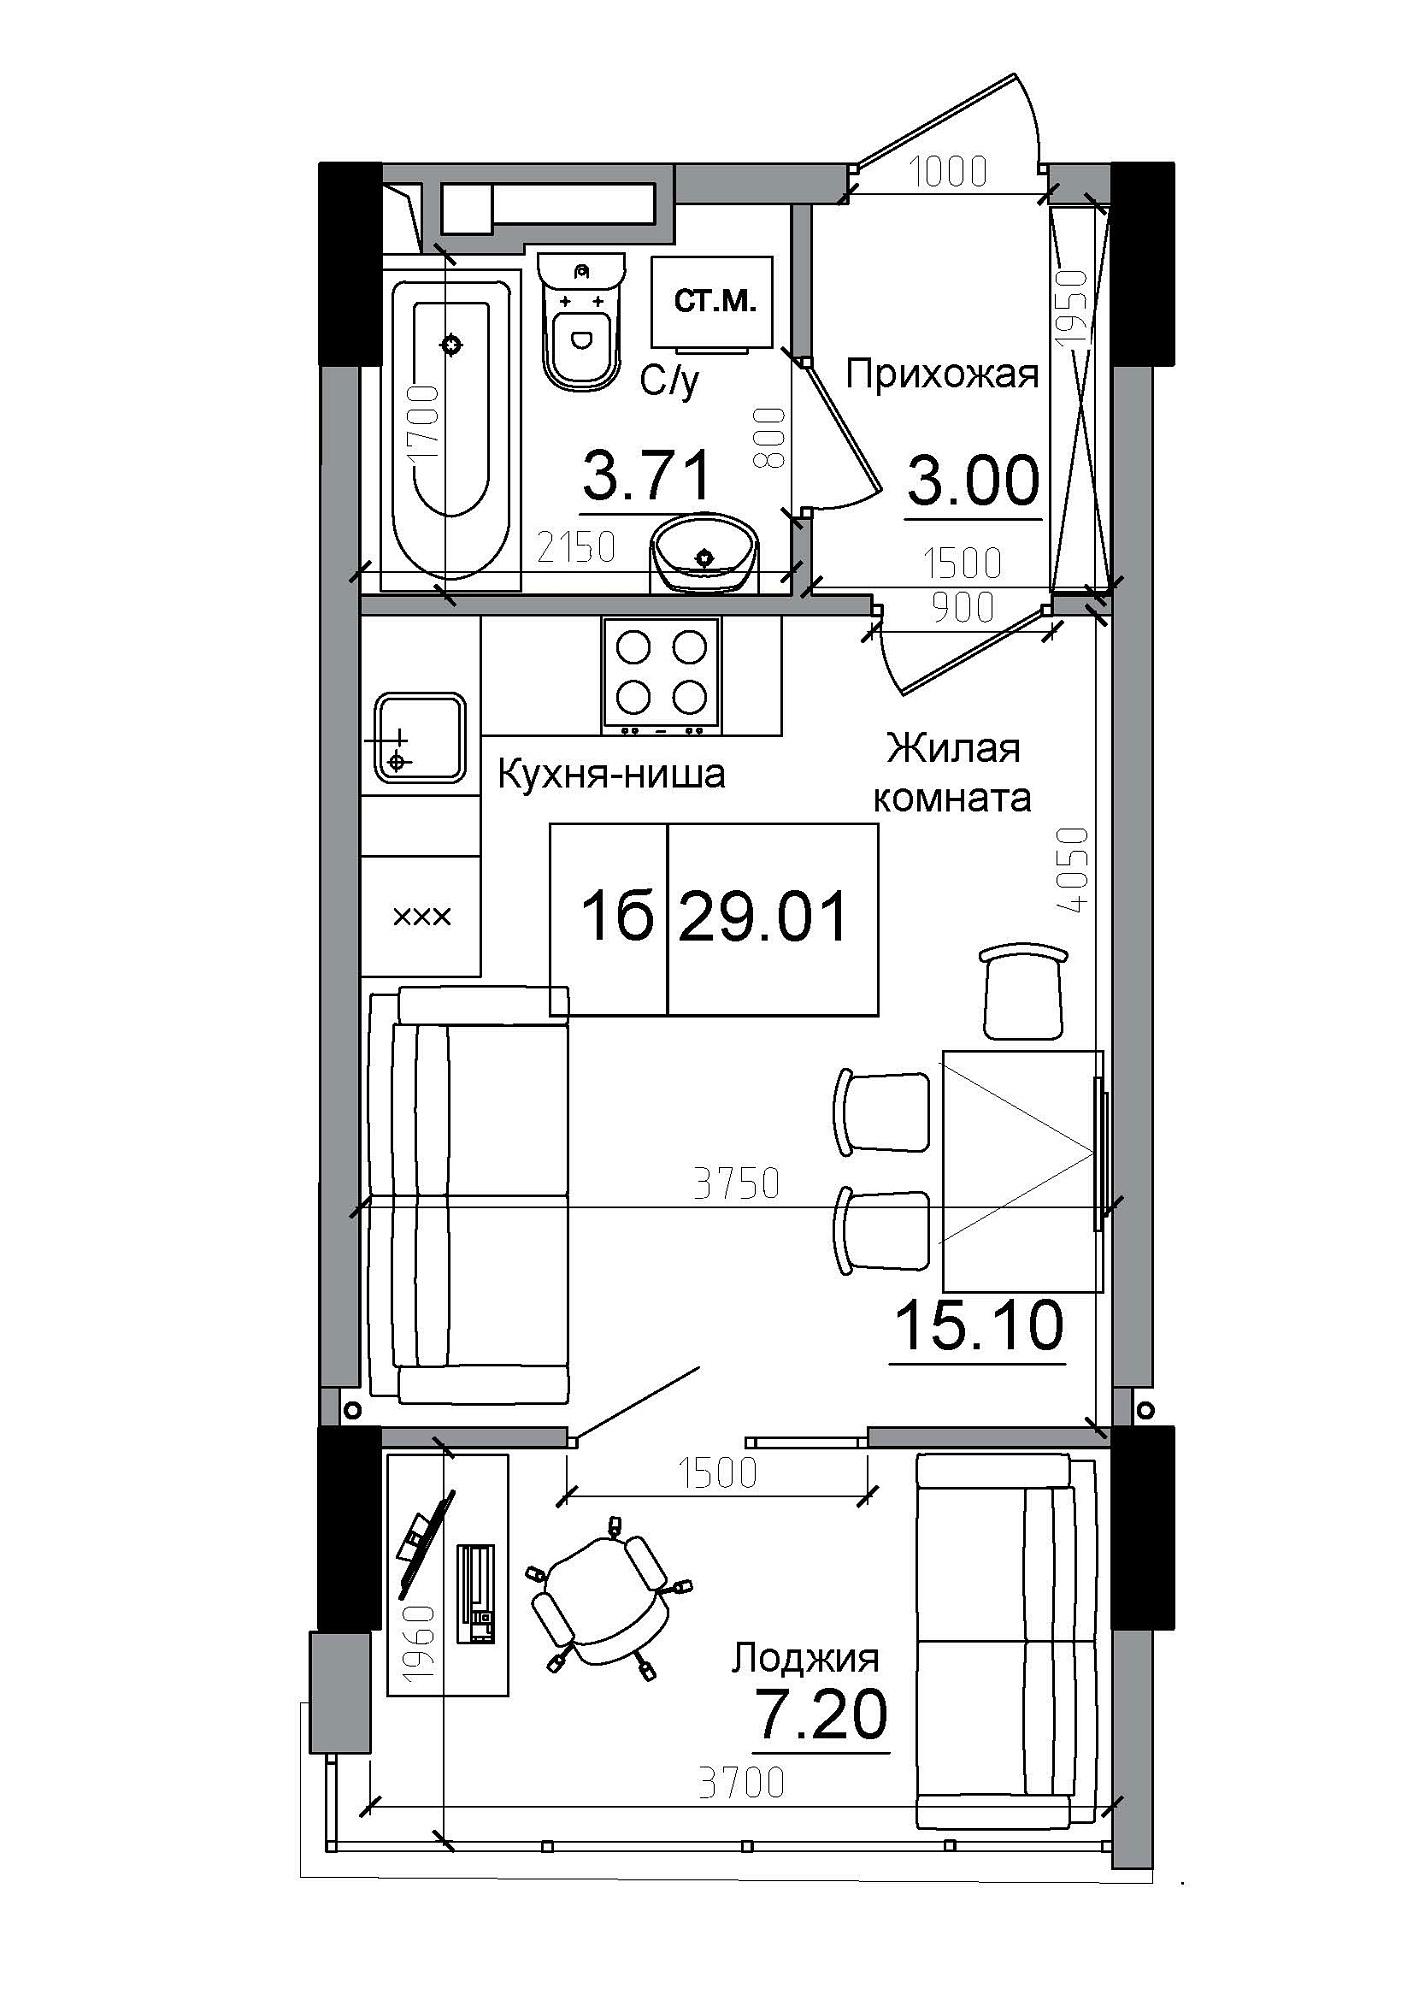 Планування Smart-квартира площею 29.01м2, AB-12-03/00002.